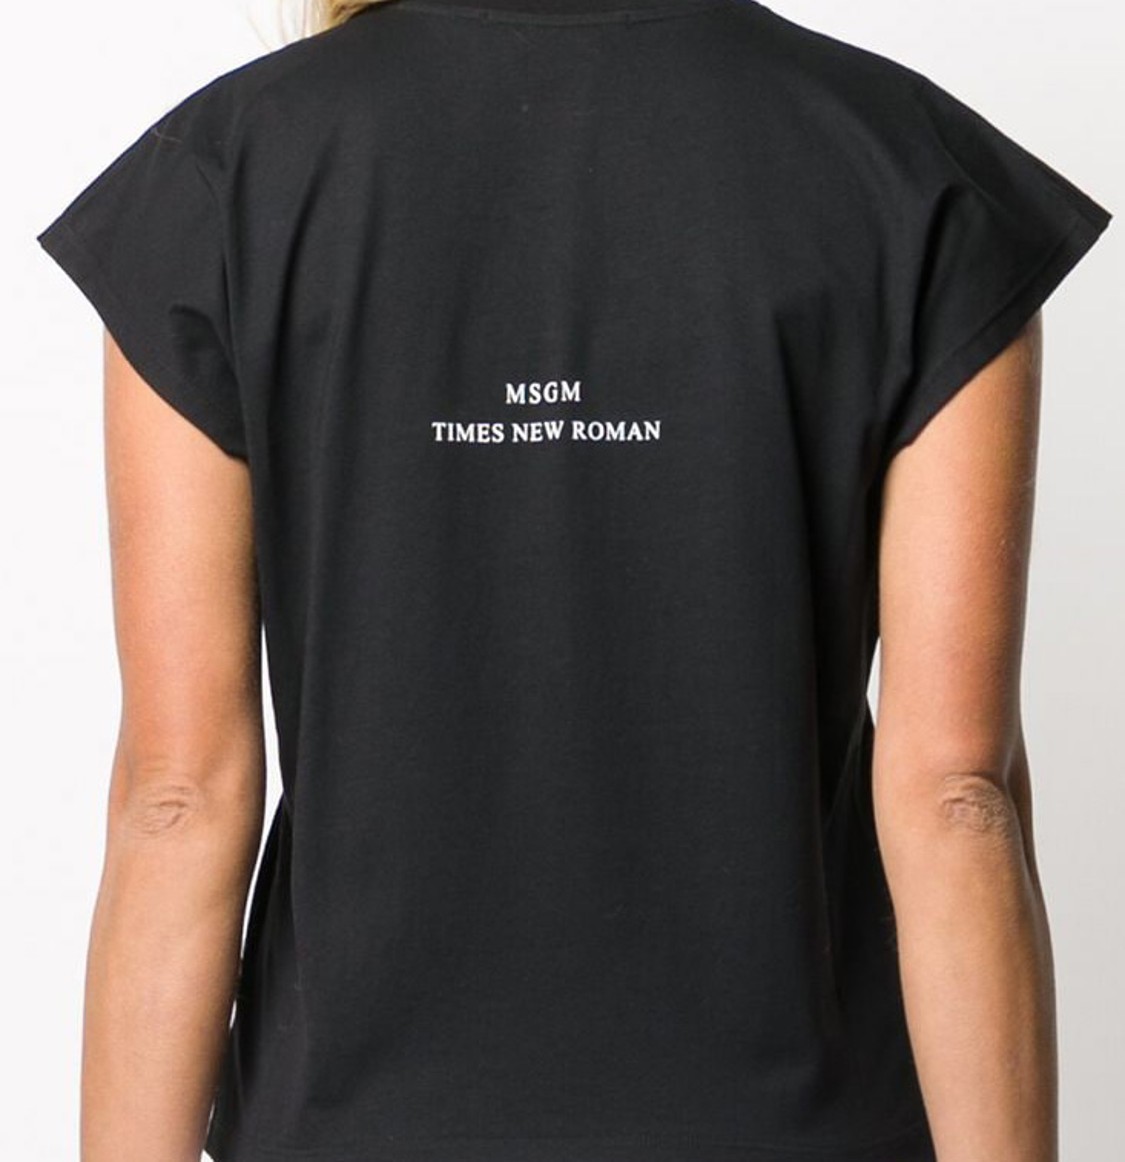 shop MSGM Saldi T-shirts: T-shirt MSGM, stampa davanti, maniche corte, girocollo, scritta e logo dietro, fit regolare.

Composizione: 100% cotone. number 1627